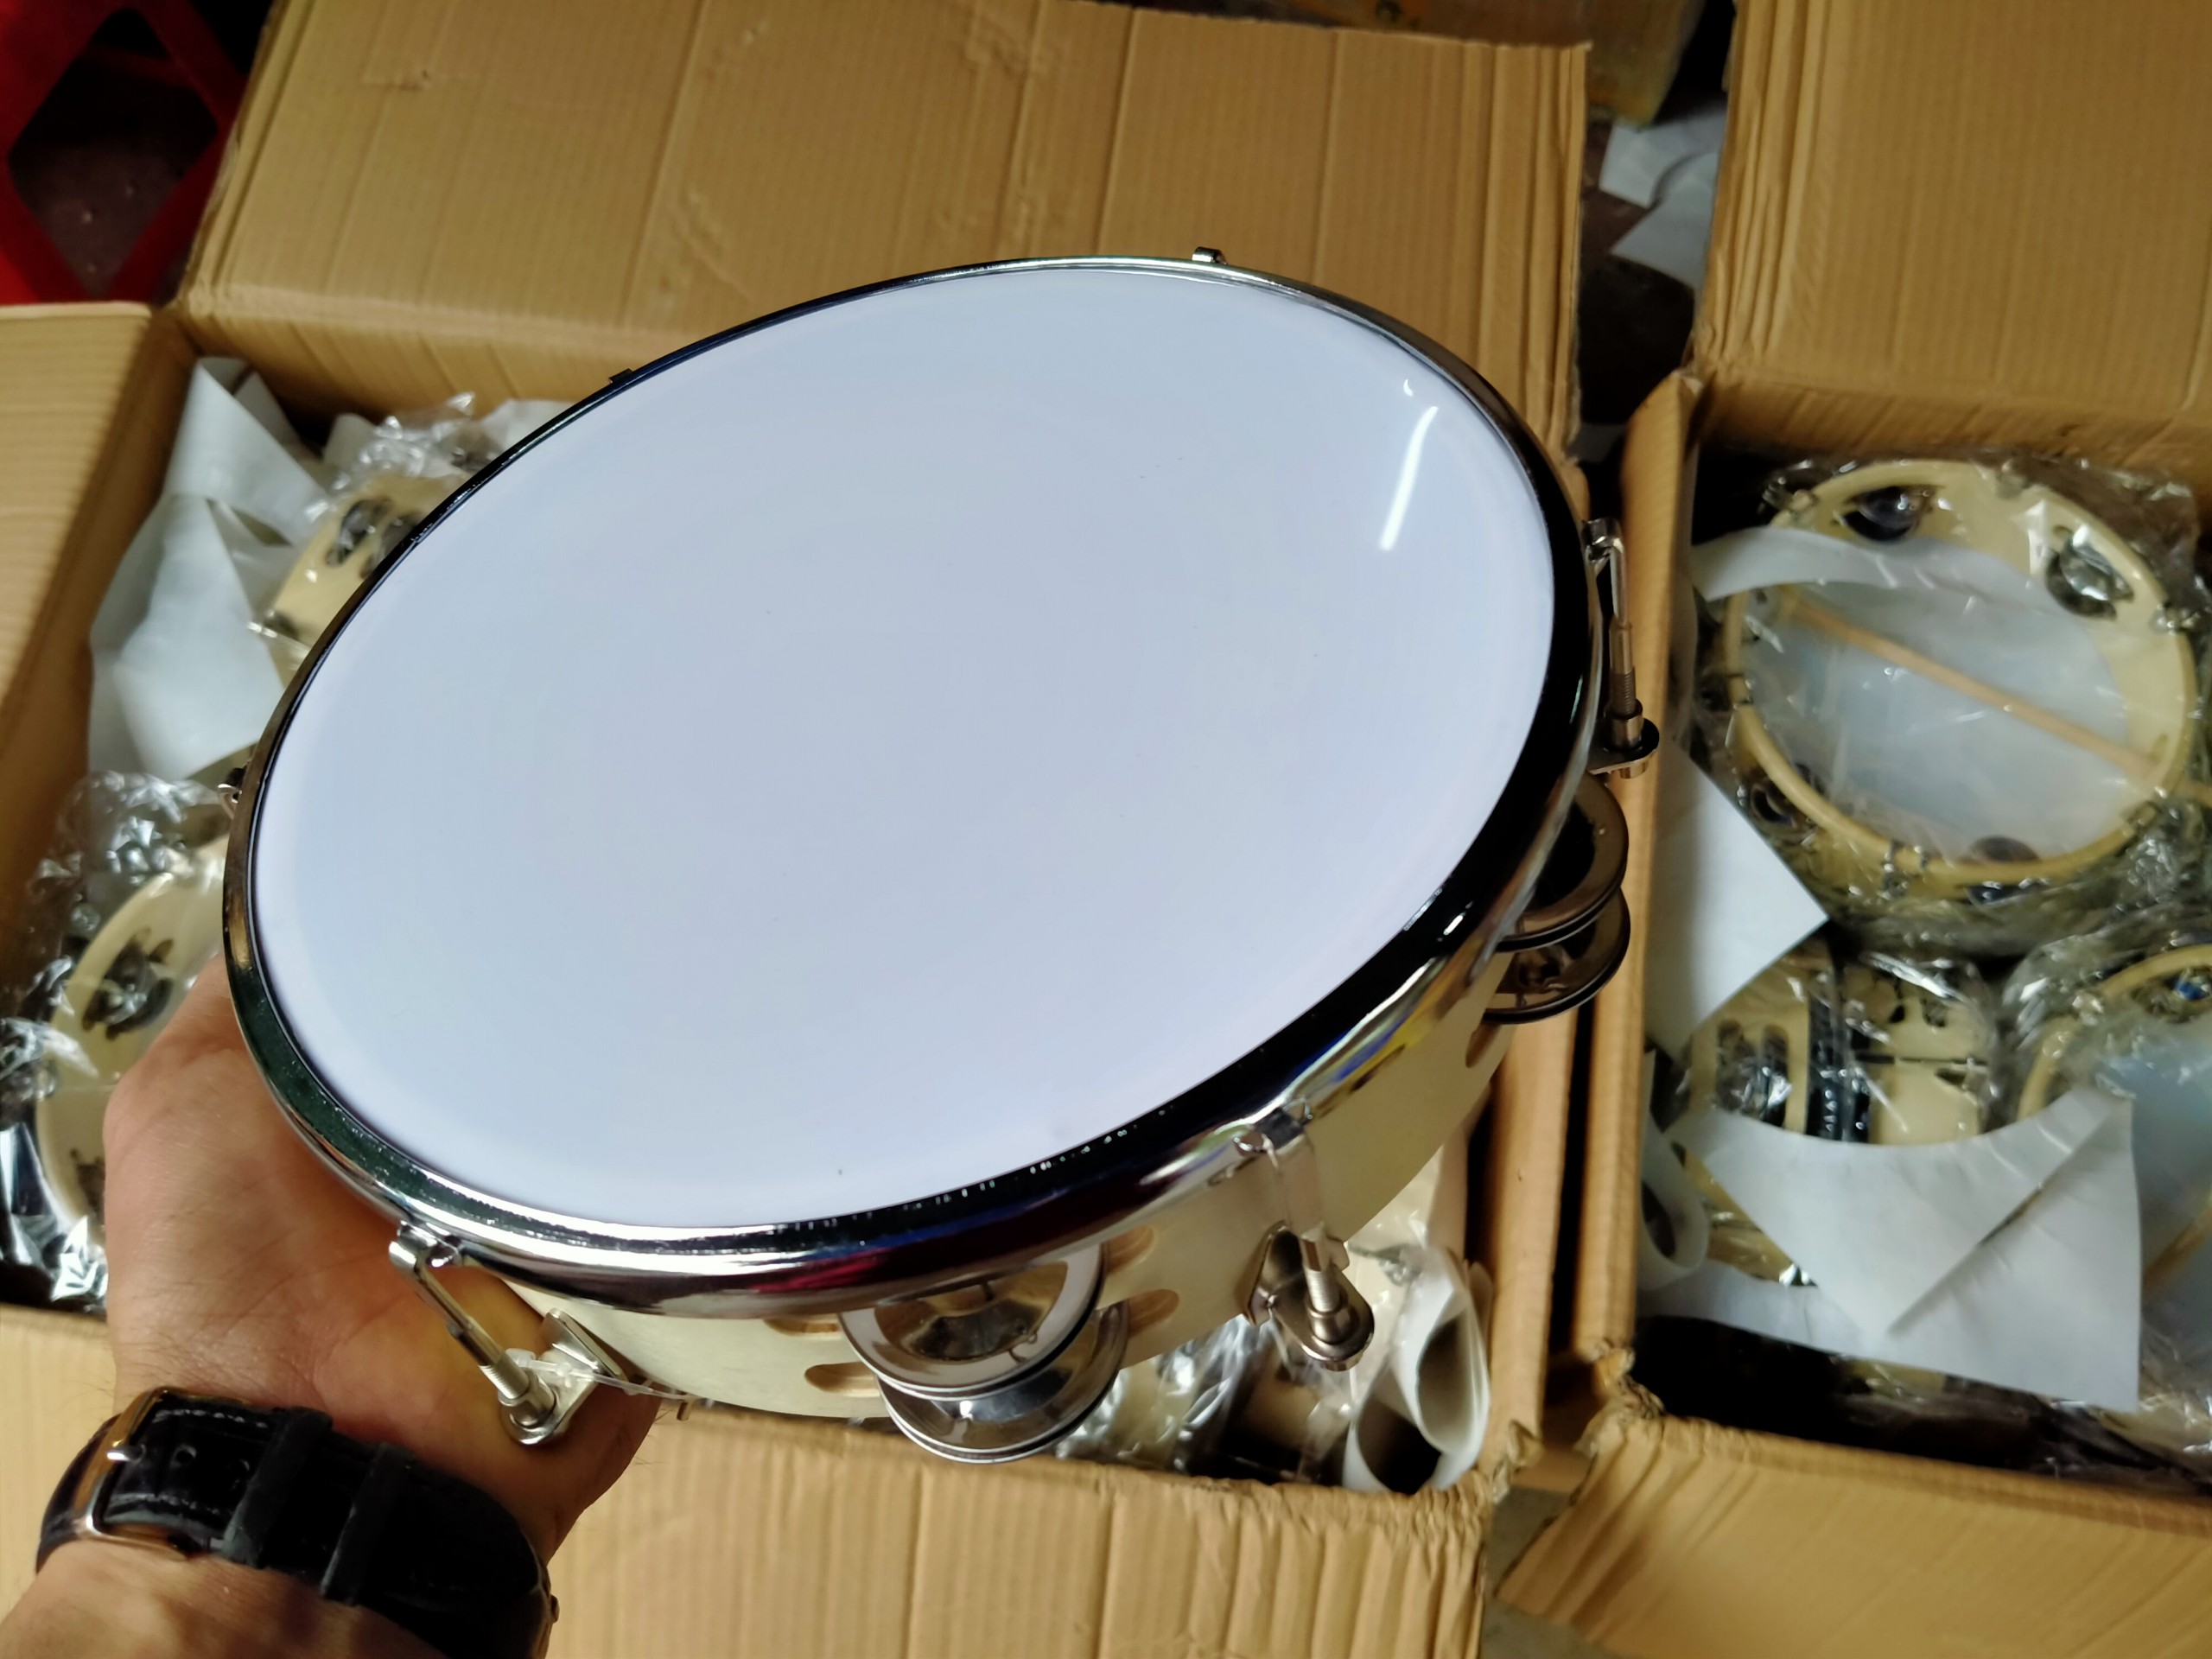 Là một trong những nhạc cụ phổ biến trong đời sống cũng như trong trường học hiện nay; trống tambourine ngày càng có thiết kế đa dạng hơn và đẹp hơn để phục vụ nhu cầu và thị hiếu từ khách hàng